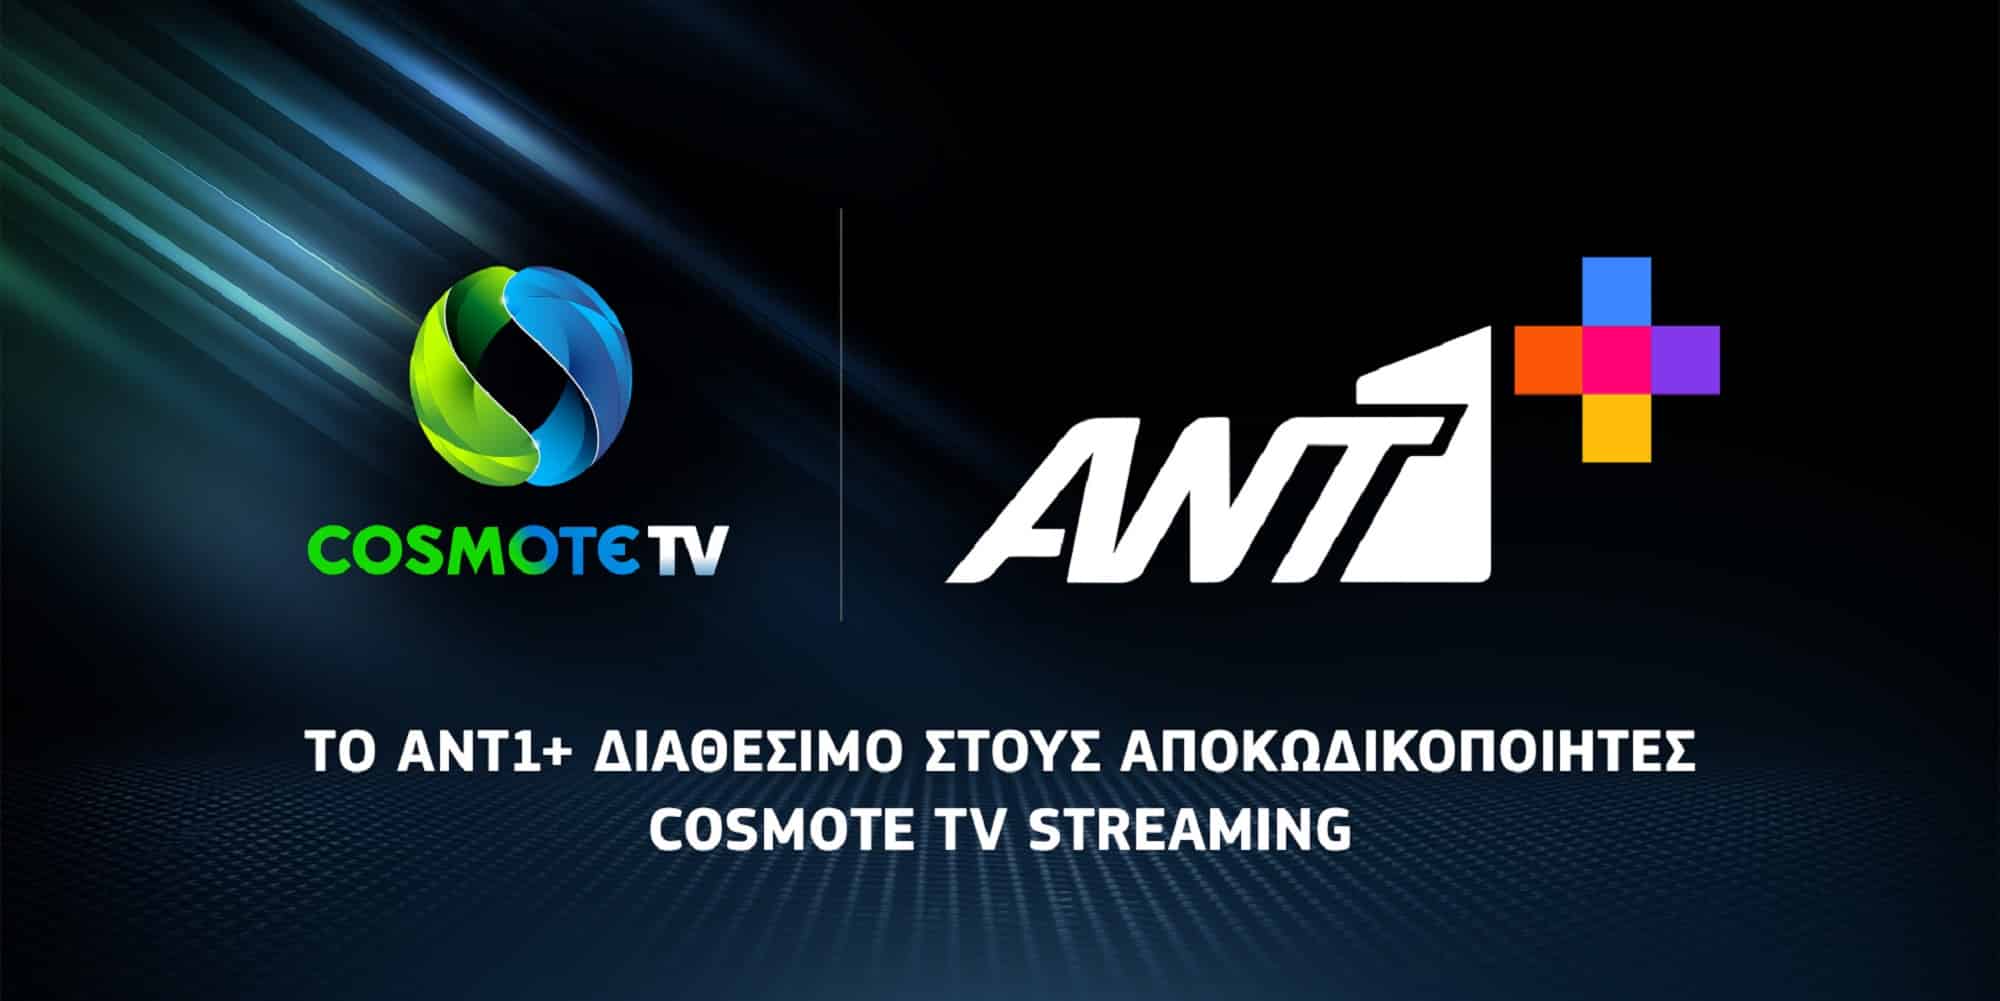 Το ANT1+ διαθέσιμο στους Android TV αποκωδικοποιητές της Cosmote TV